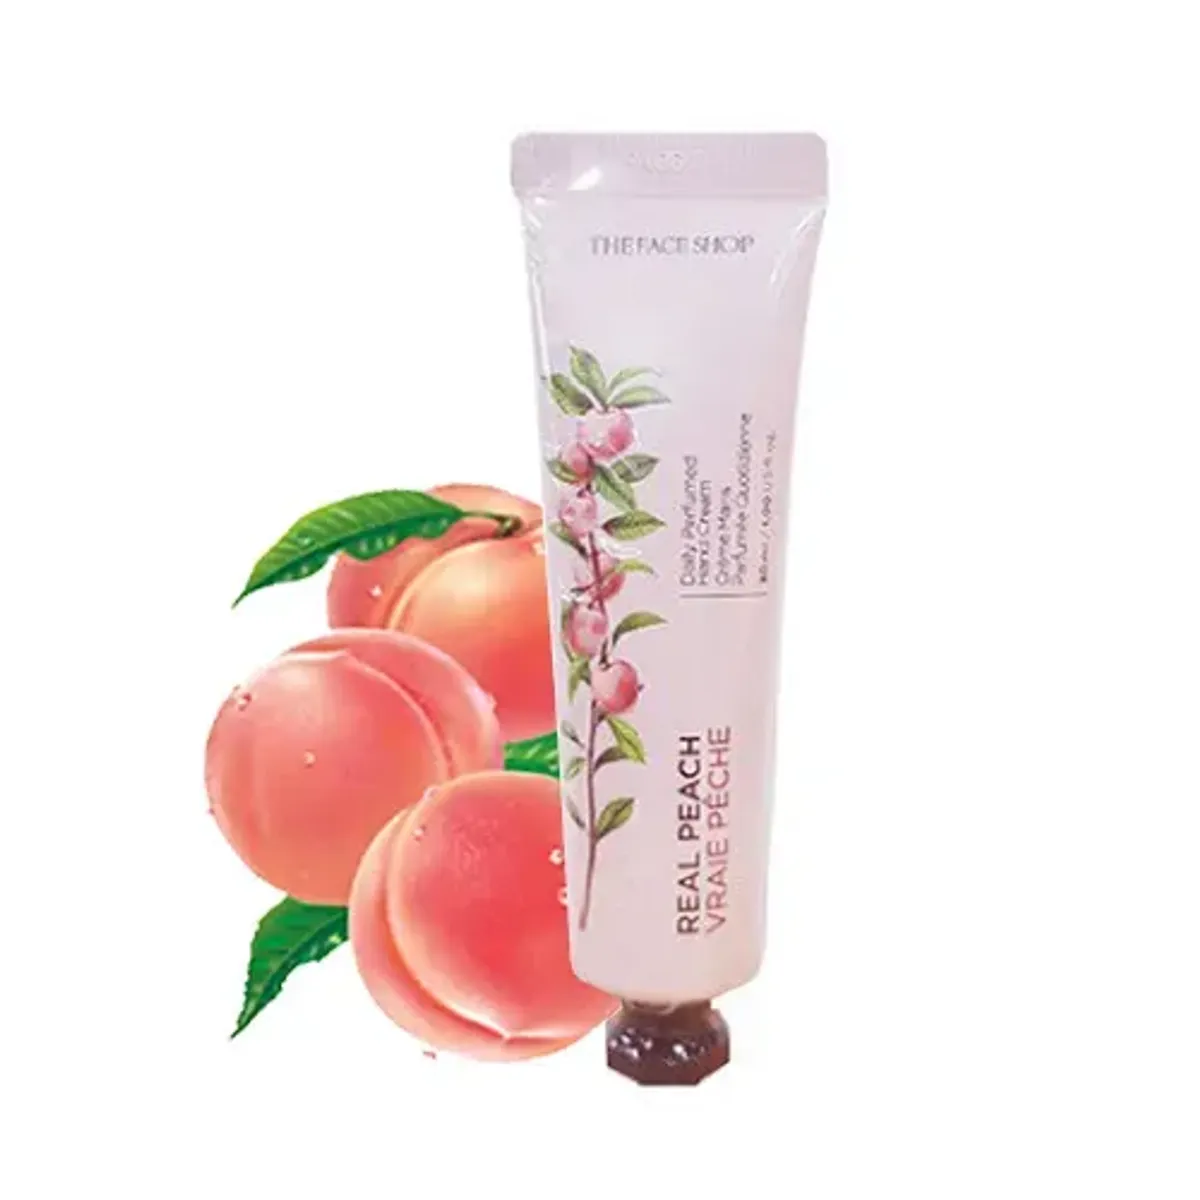 kem-duong-tay-cung-cap-am-daily-perfumed-hand-cream-07-real-peach-30ml-3-1